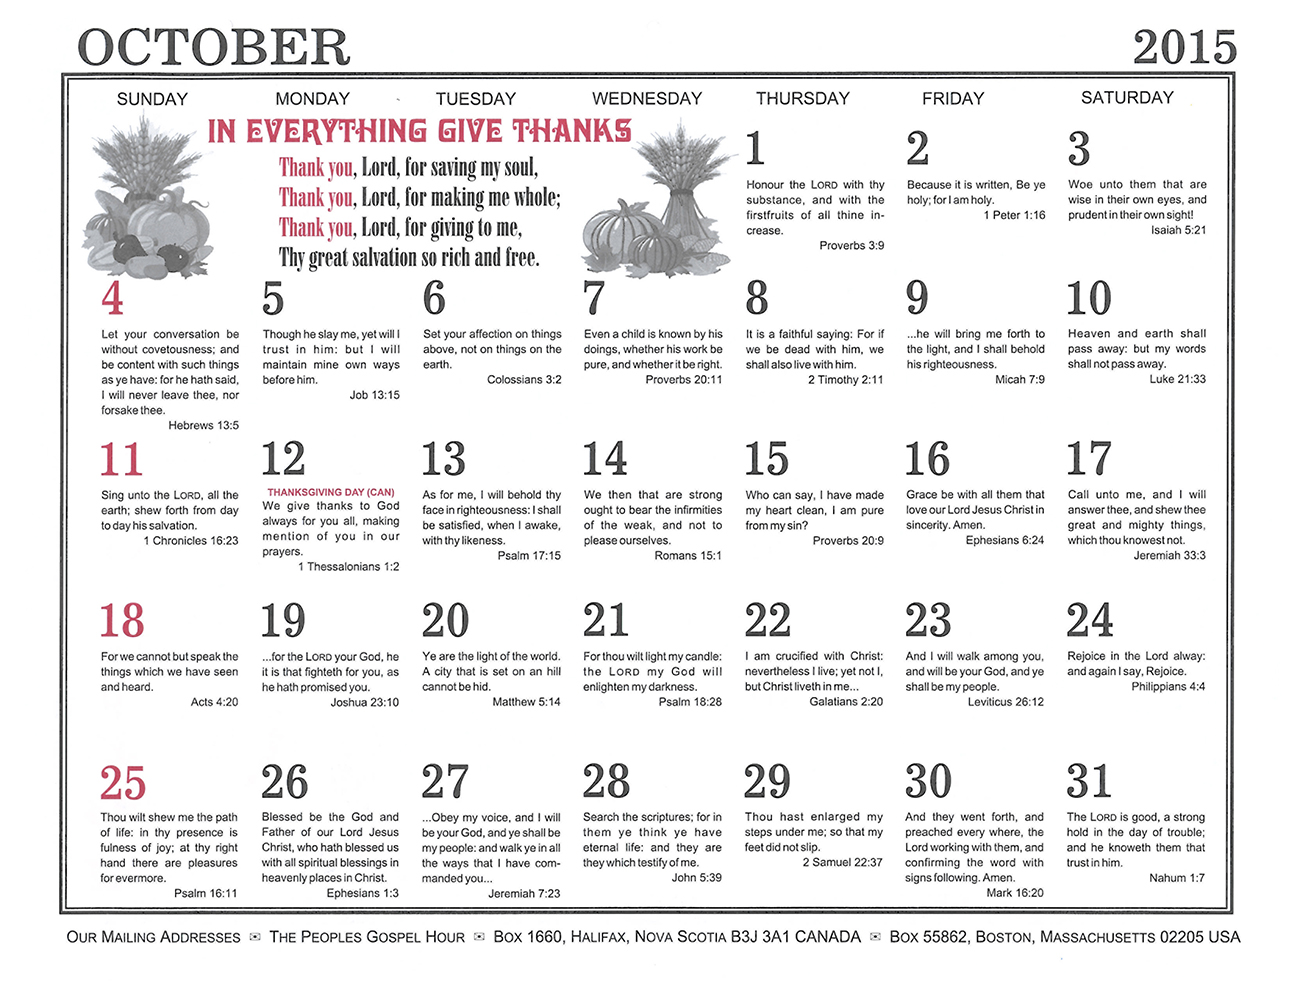 October: 2015 The Peoples Gospel Hour Calendar